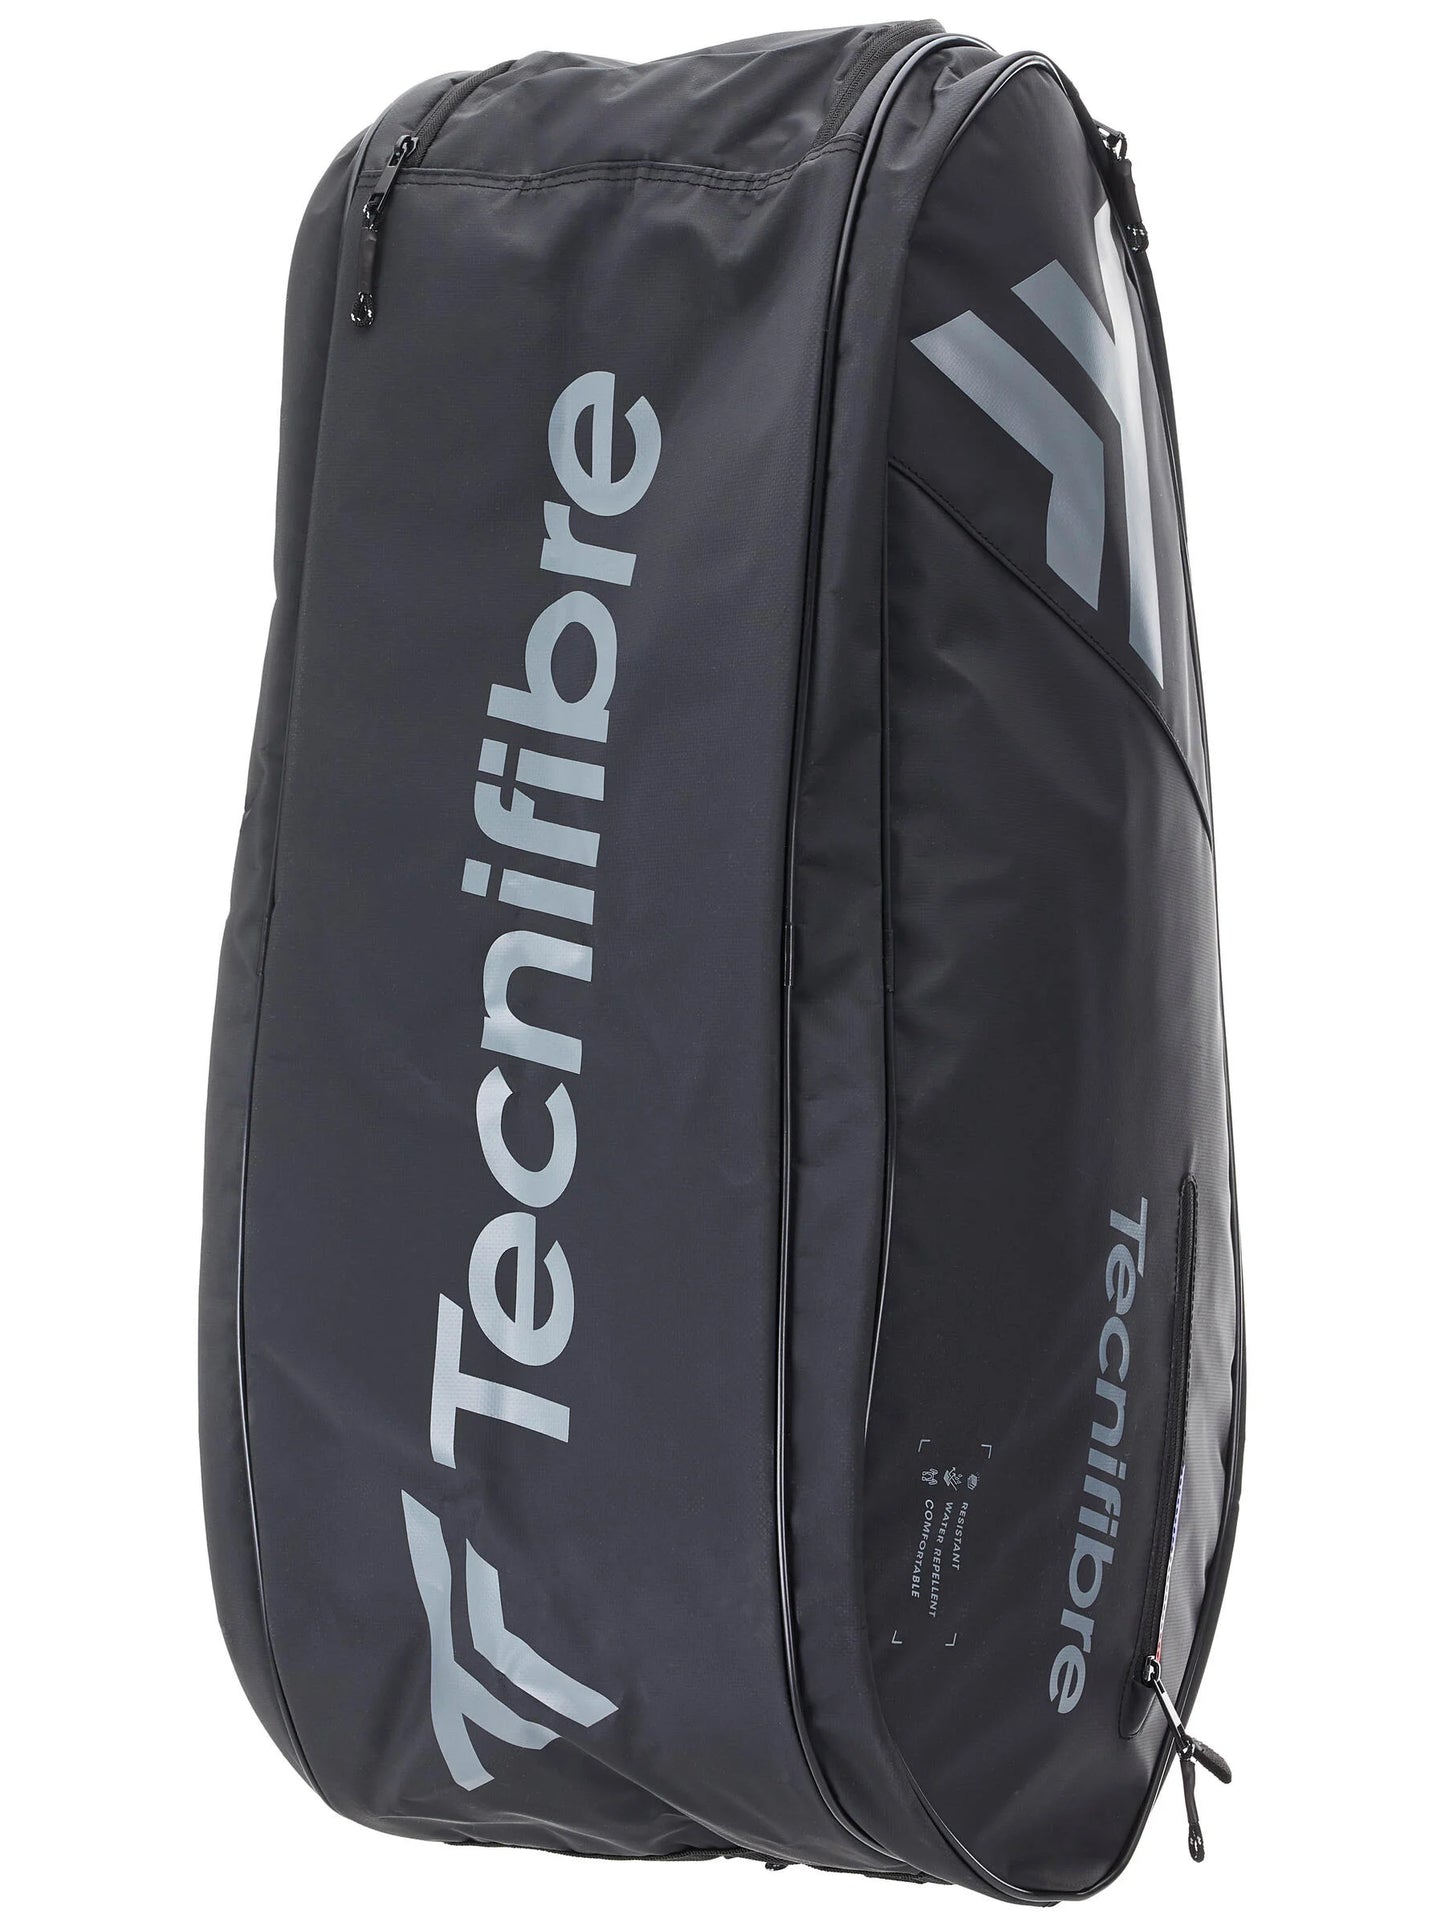 Tecnifibre Team Dry Stand 12R tennis bag